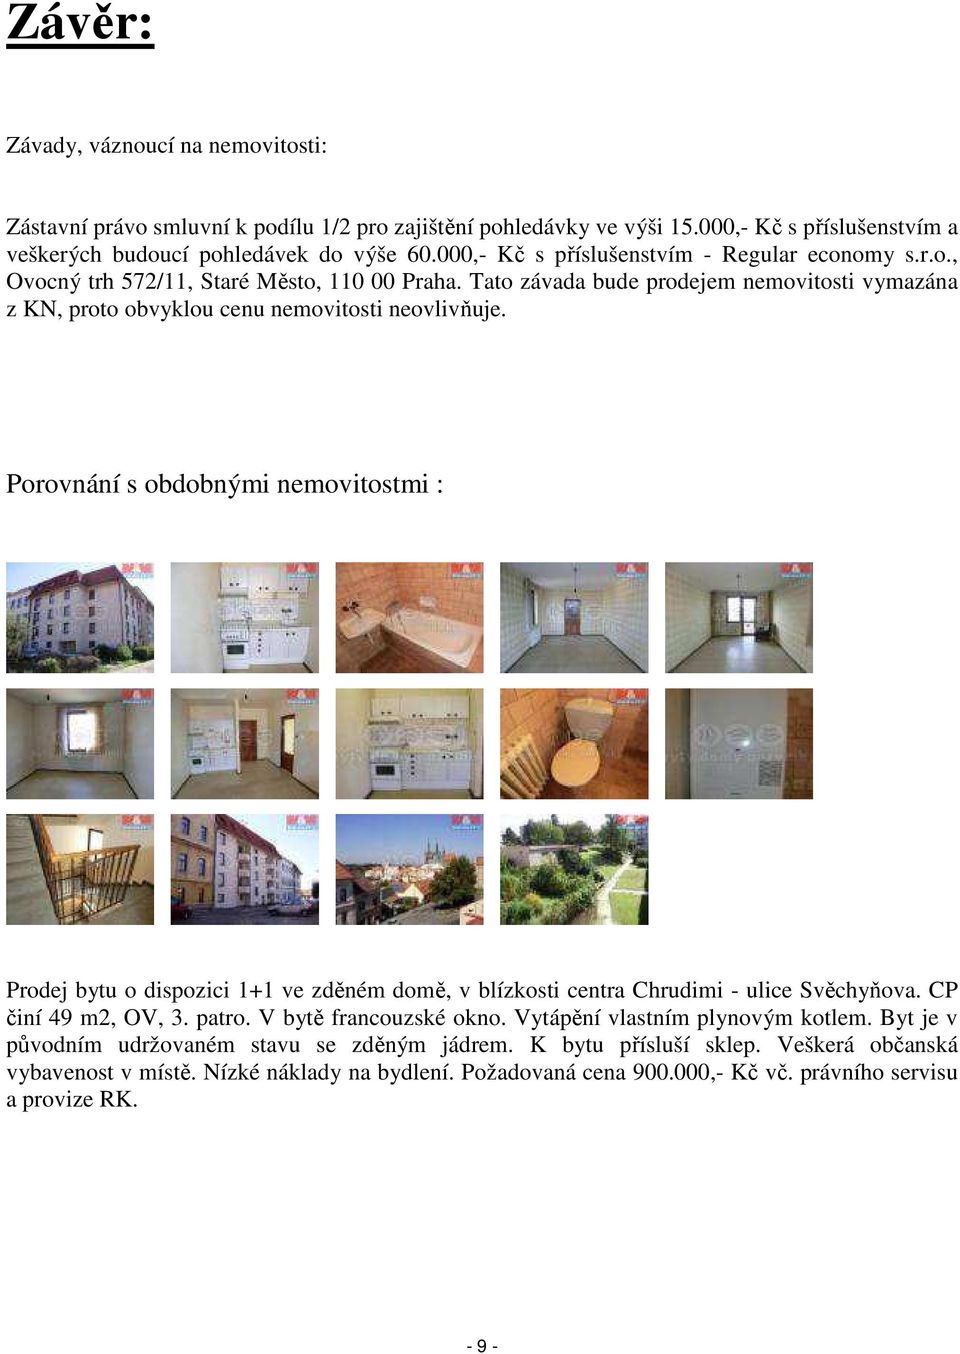 Porovnání s obdobnými nemovitostmi : Prodej bytu o dispozici 1+1 ve zděném domě, v blízkosti centra Chrudimi - ulice Svěchyňova. CP činí 49 m2, OV, 3. patro. V bytě francouzské okno.